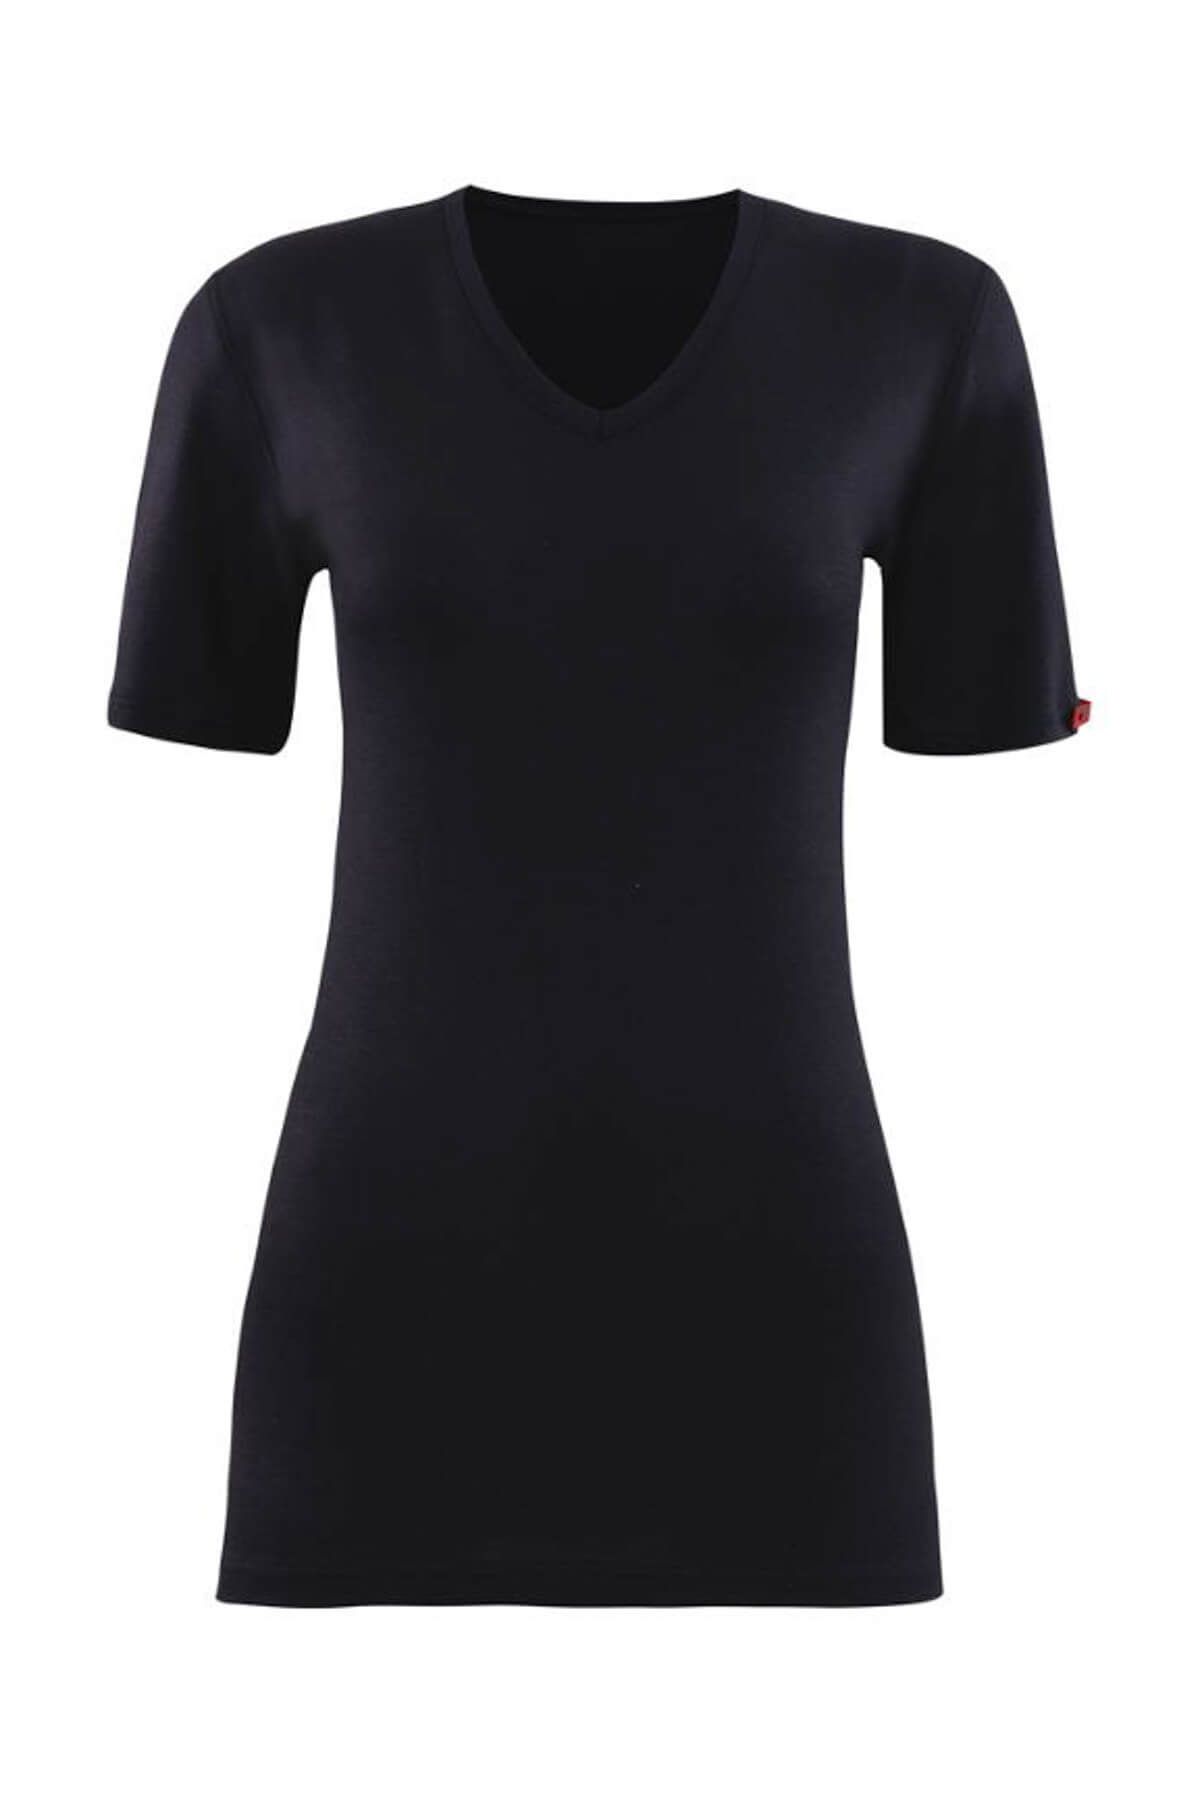 Blackspade Kadın Siyah 2. Seviye Termal  T-Shirt 1263